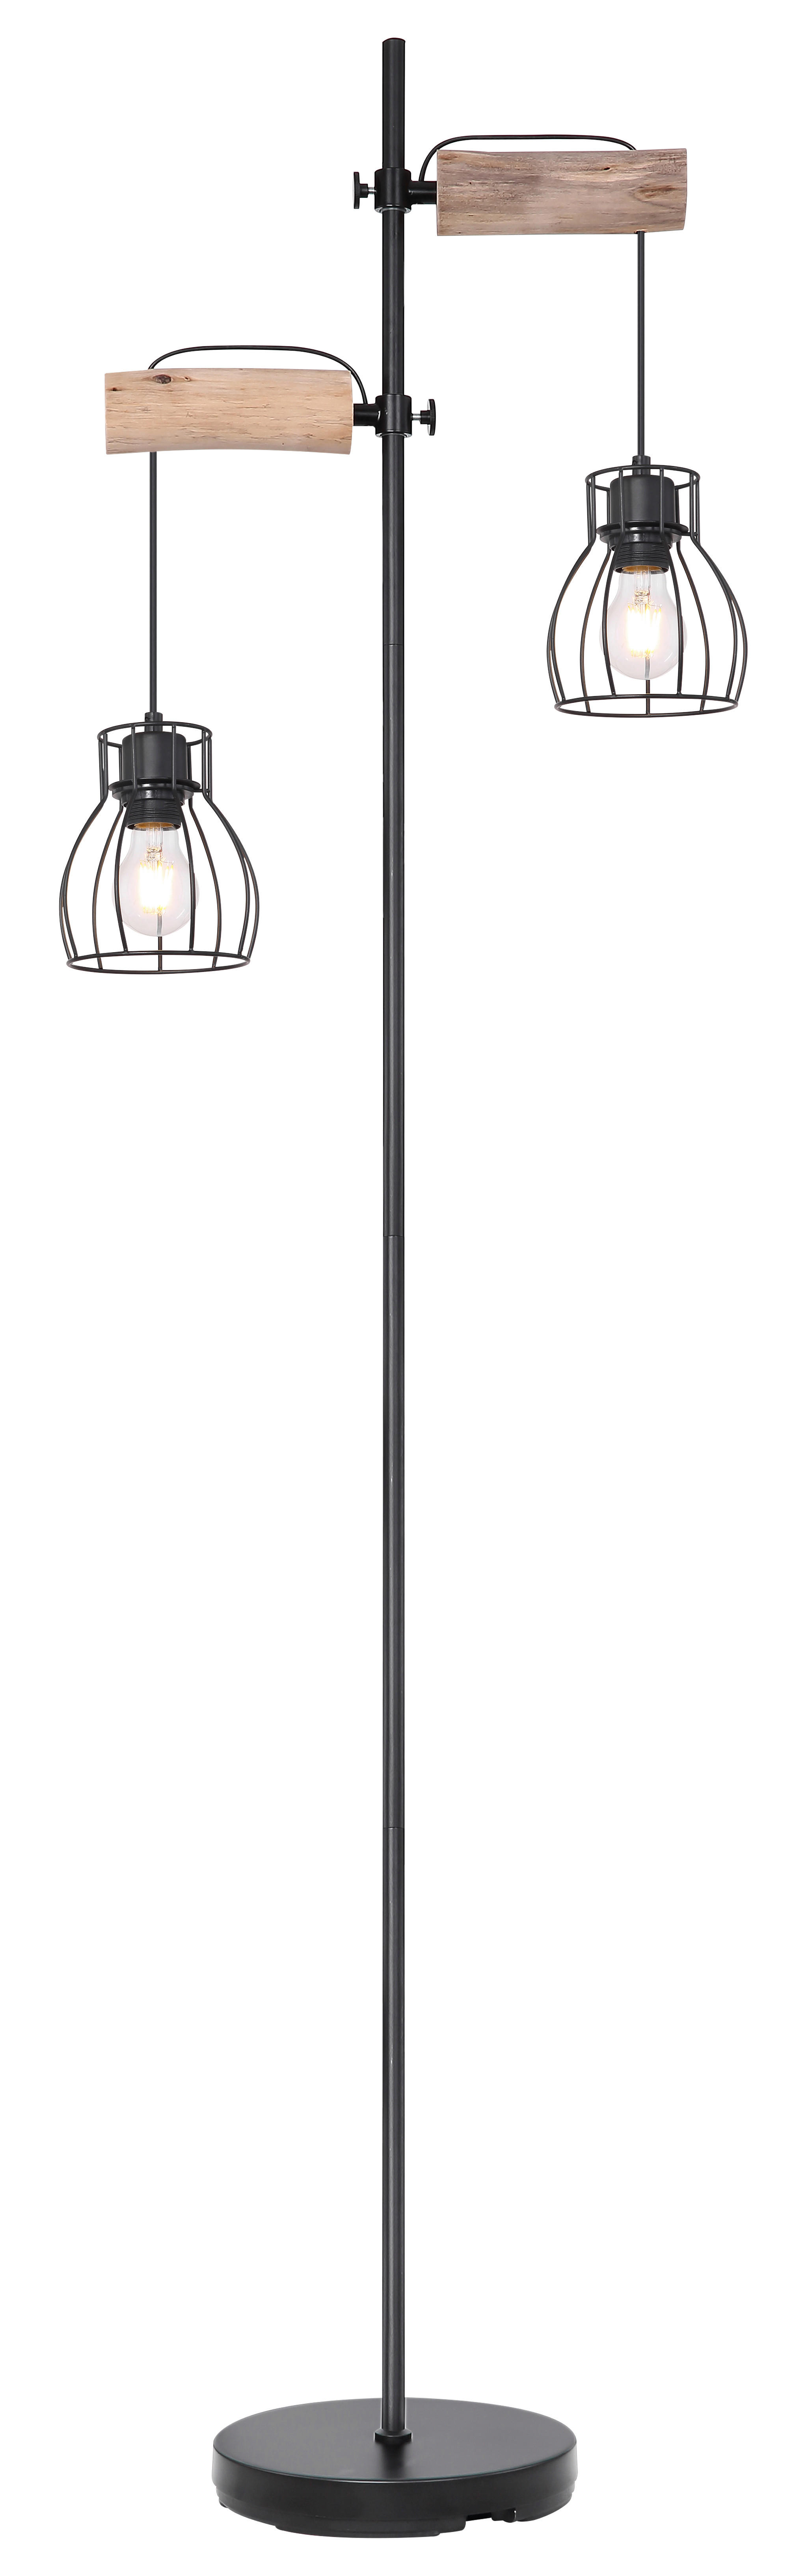 STOJACIA LAMPA, 47/168 cm